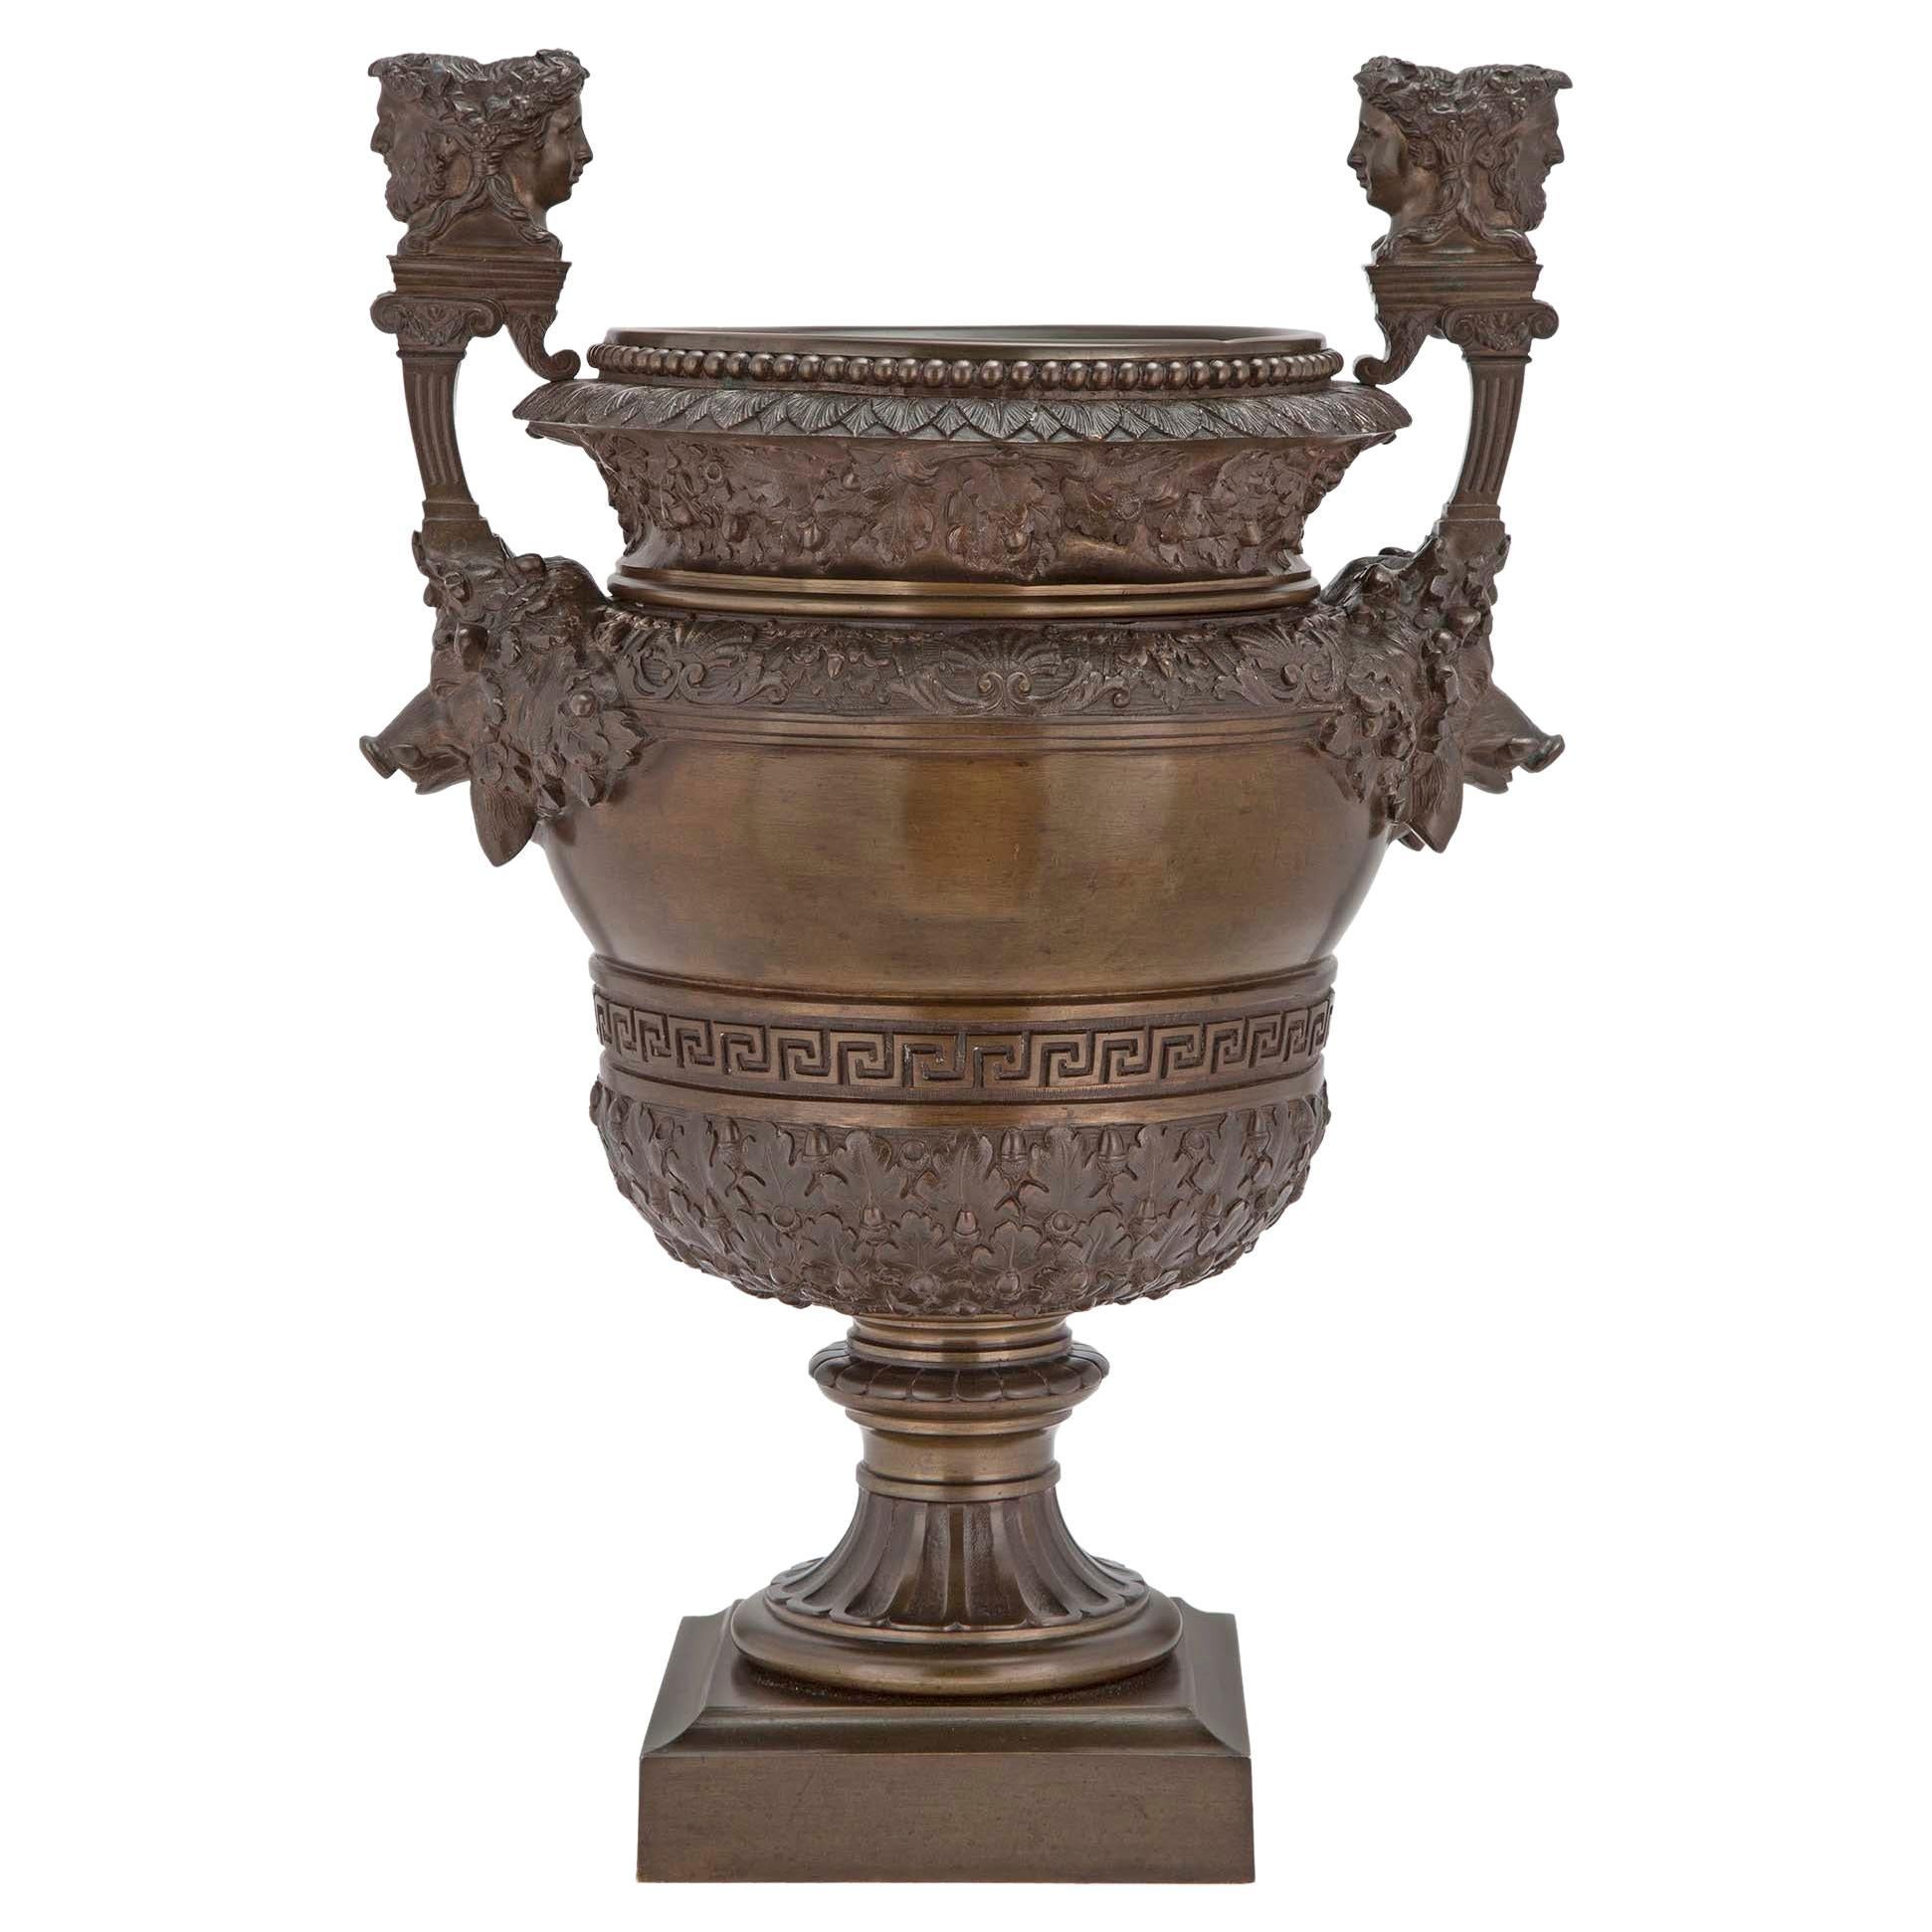 Urne aus patinierter Bronze aus der Grand Tour-Periode des 19. Jahrhunderts